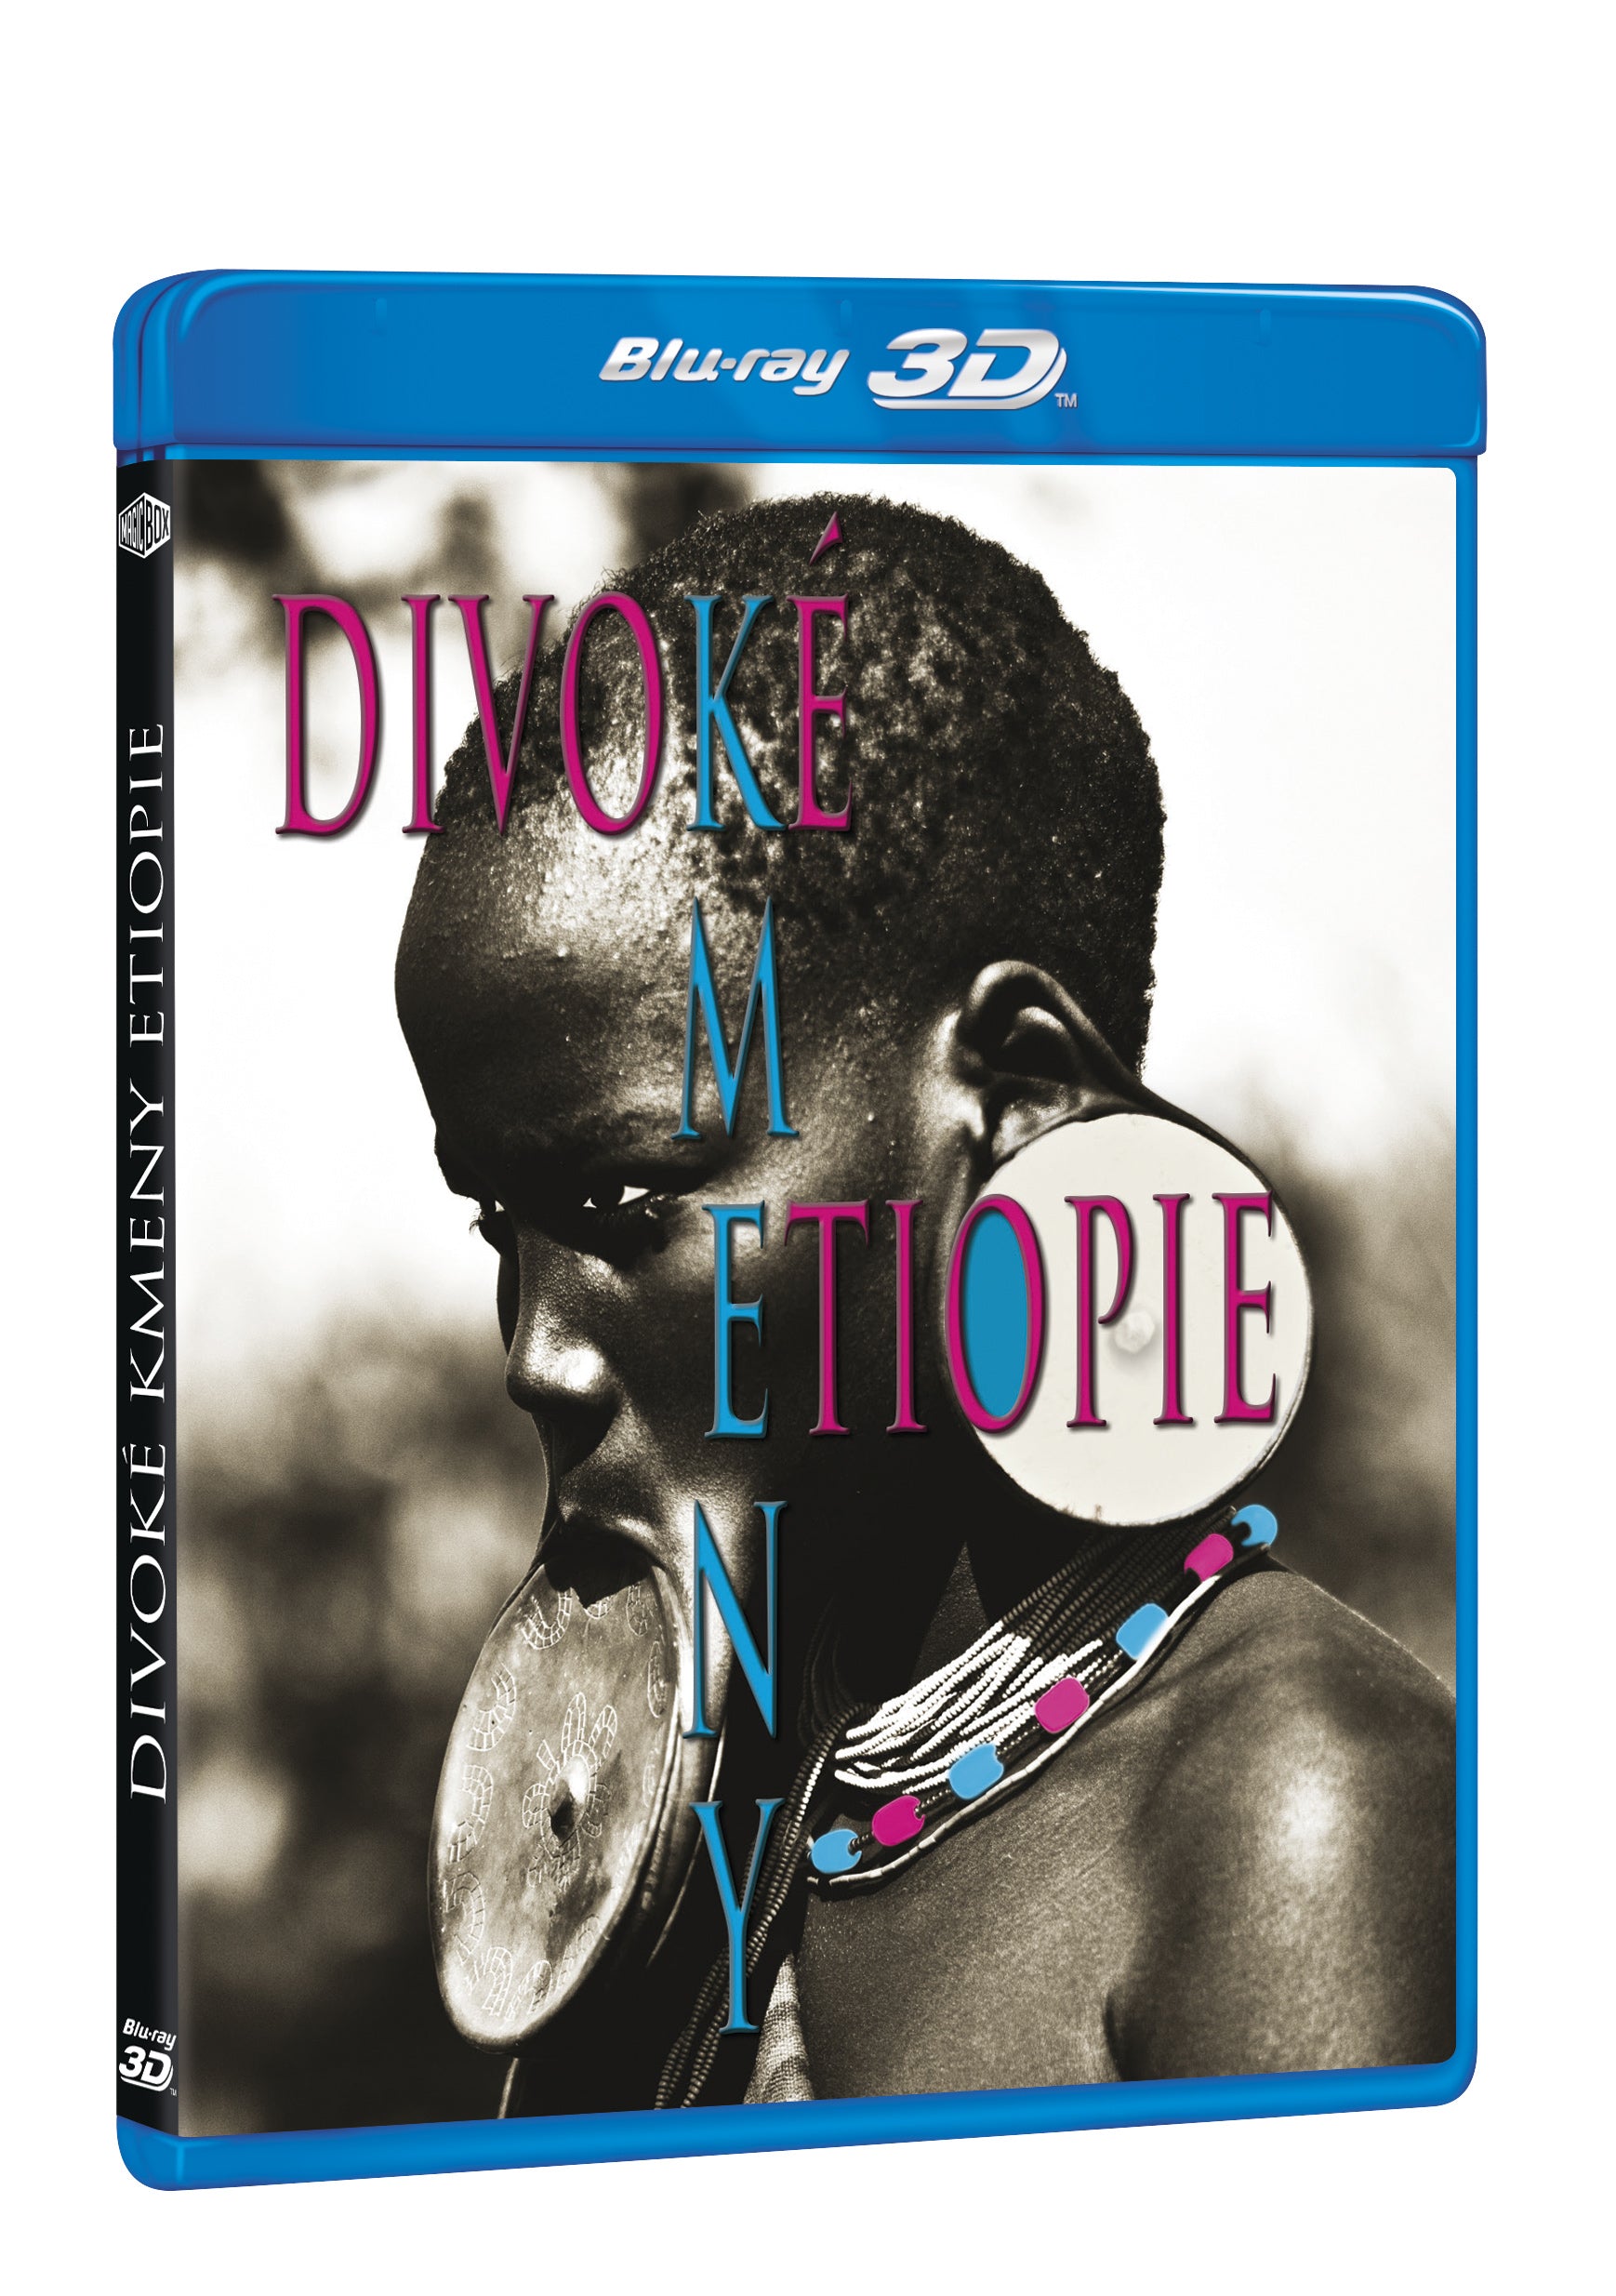 Divoke kmeny Etiopie BD (3D+2D) / Divoke kmeny Etiopie - Czech version